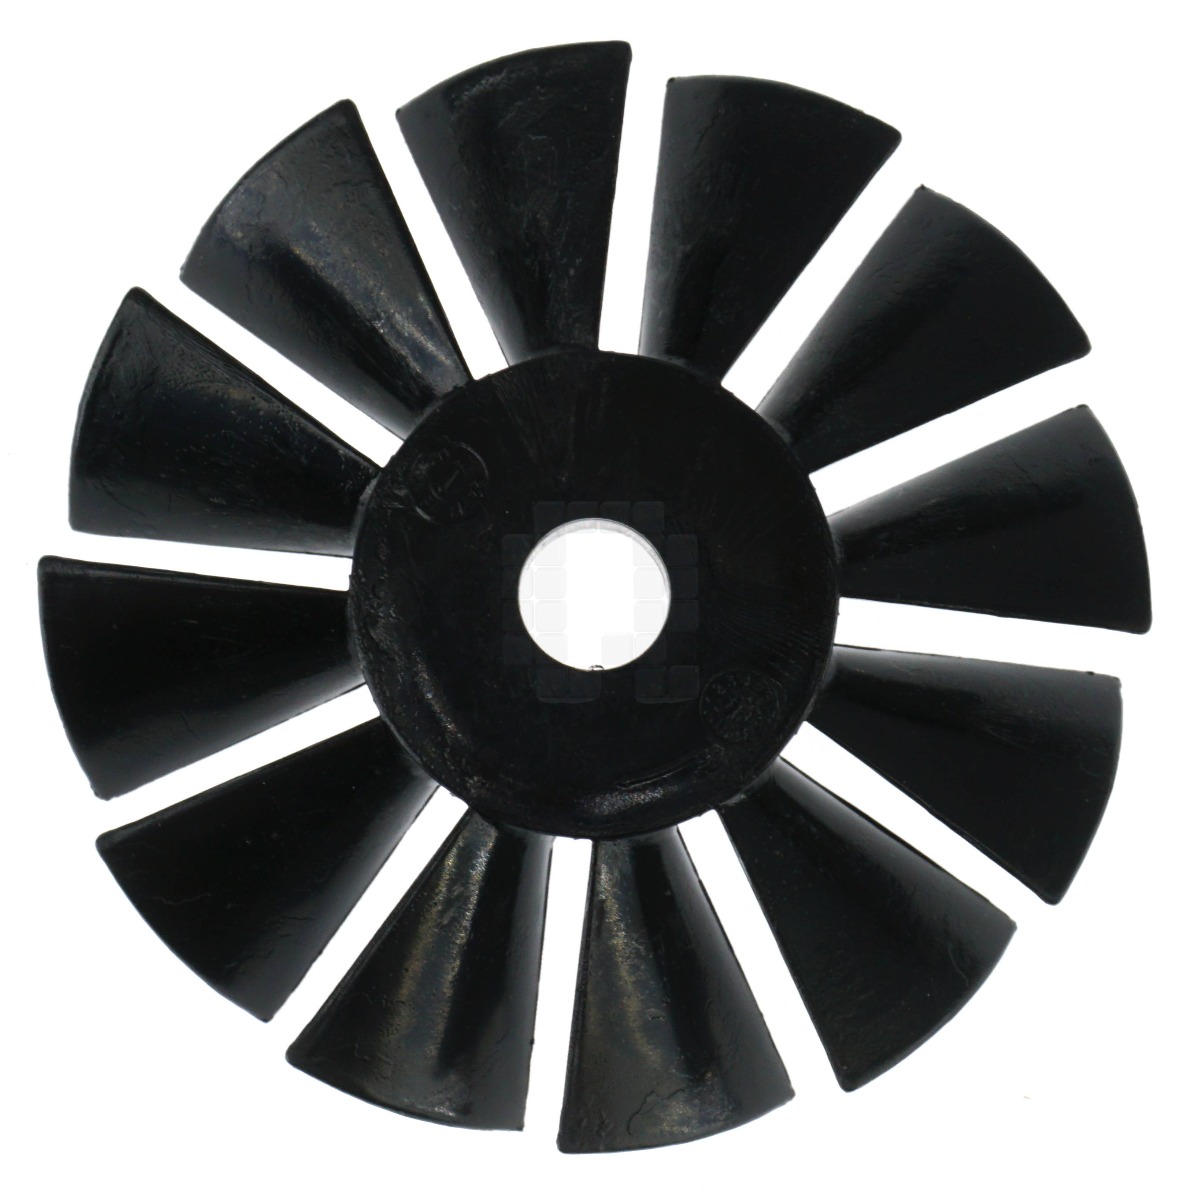 Bostitch, Craftsman, DeWALT & Porter-Cable A11031 Air Compressor Fan